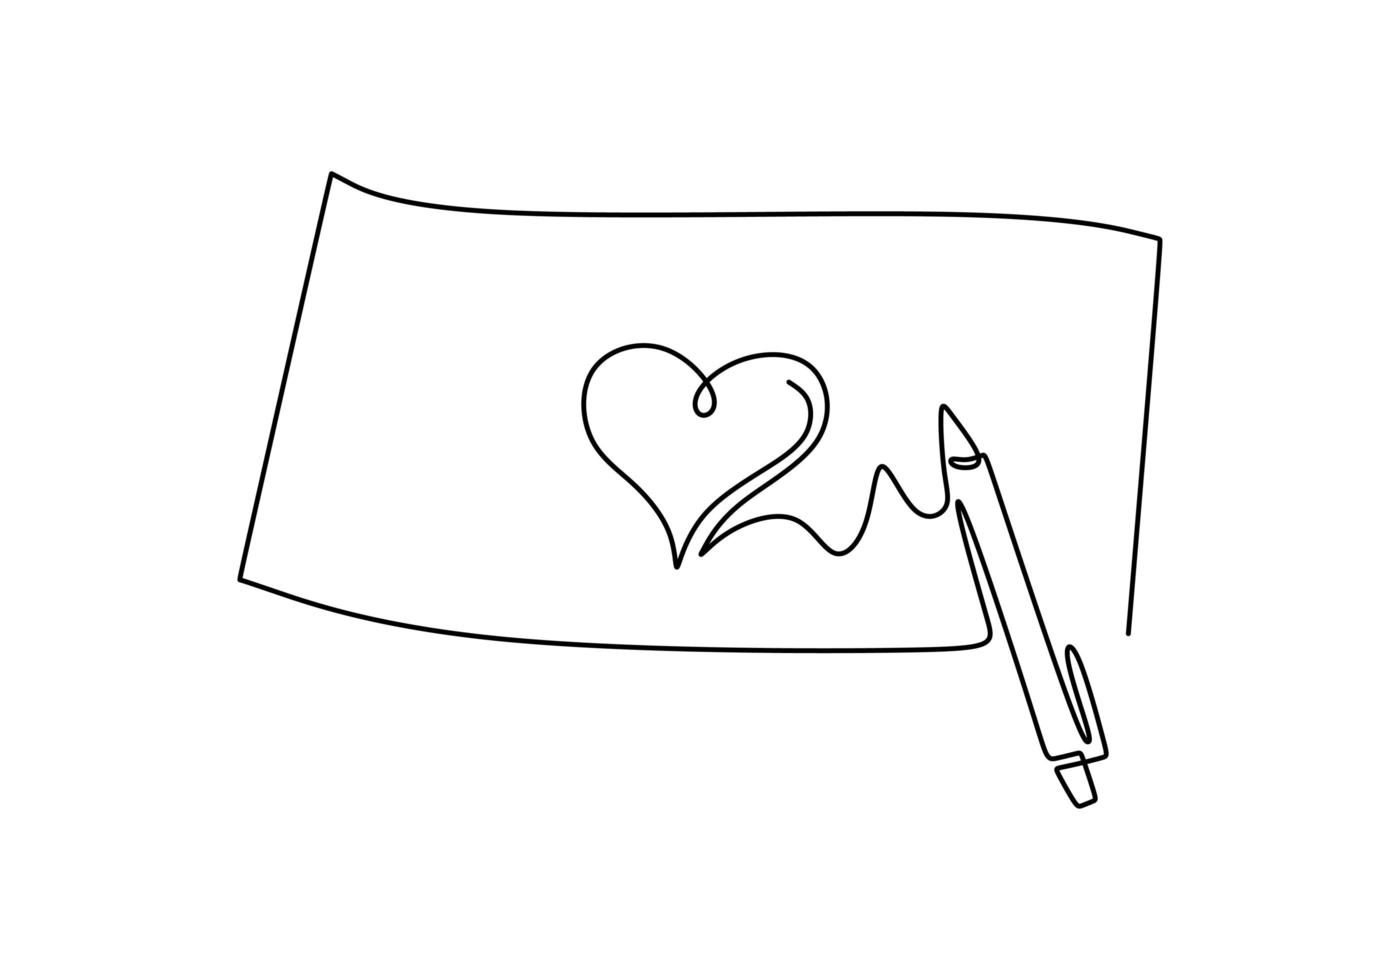 coração no papel, símbolo de amor com caneta de tinta. desenho de linha contínua, ilustração em vetor esboço desenhado de uma mão.